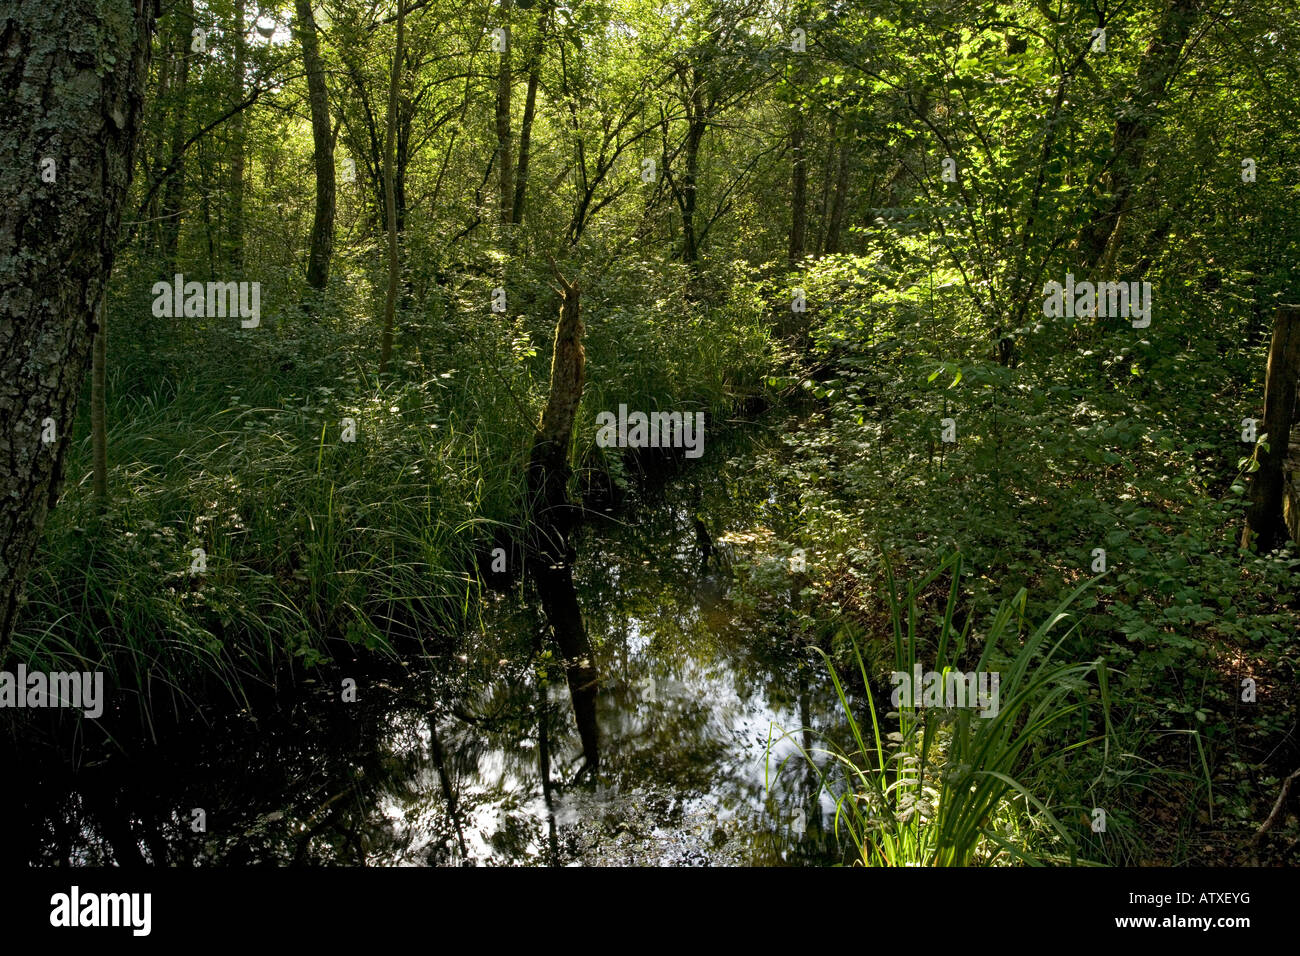 Naturschutzgebiet, Marais de Lavours, nördlich von Aix les Bains Frankreich Fen Moor und Wald Blick auf das Gebiet von Fen Stockfoto